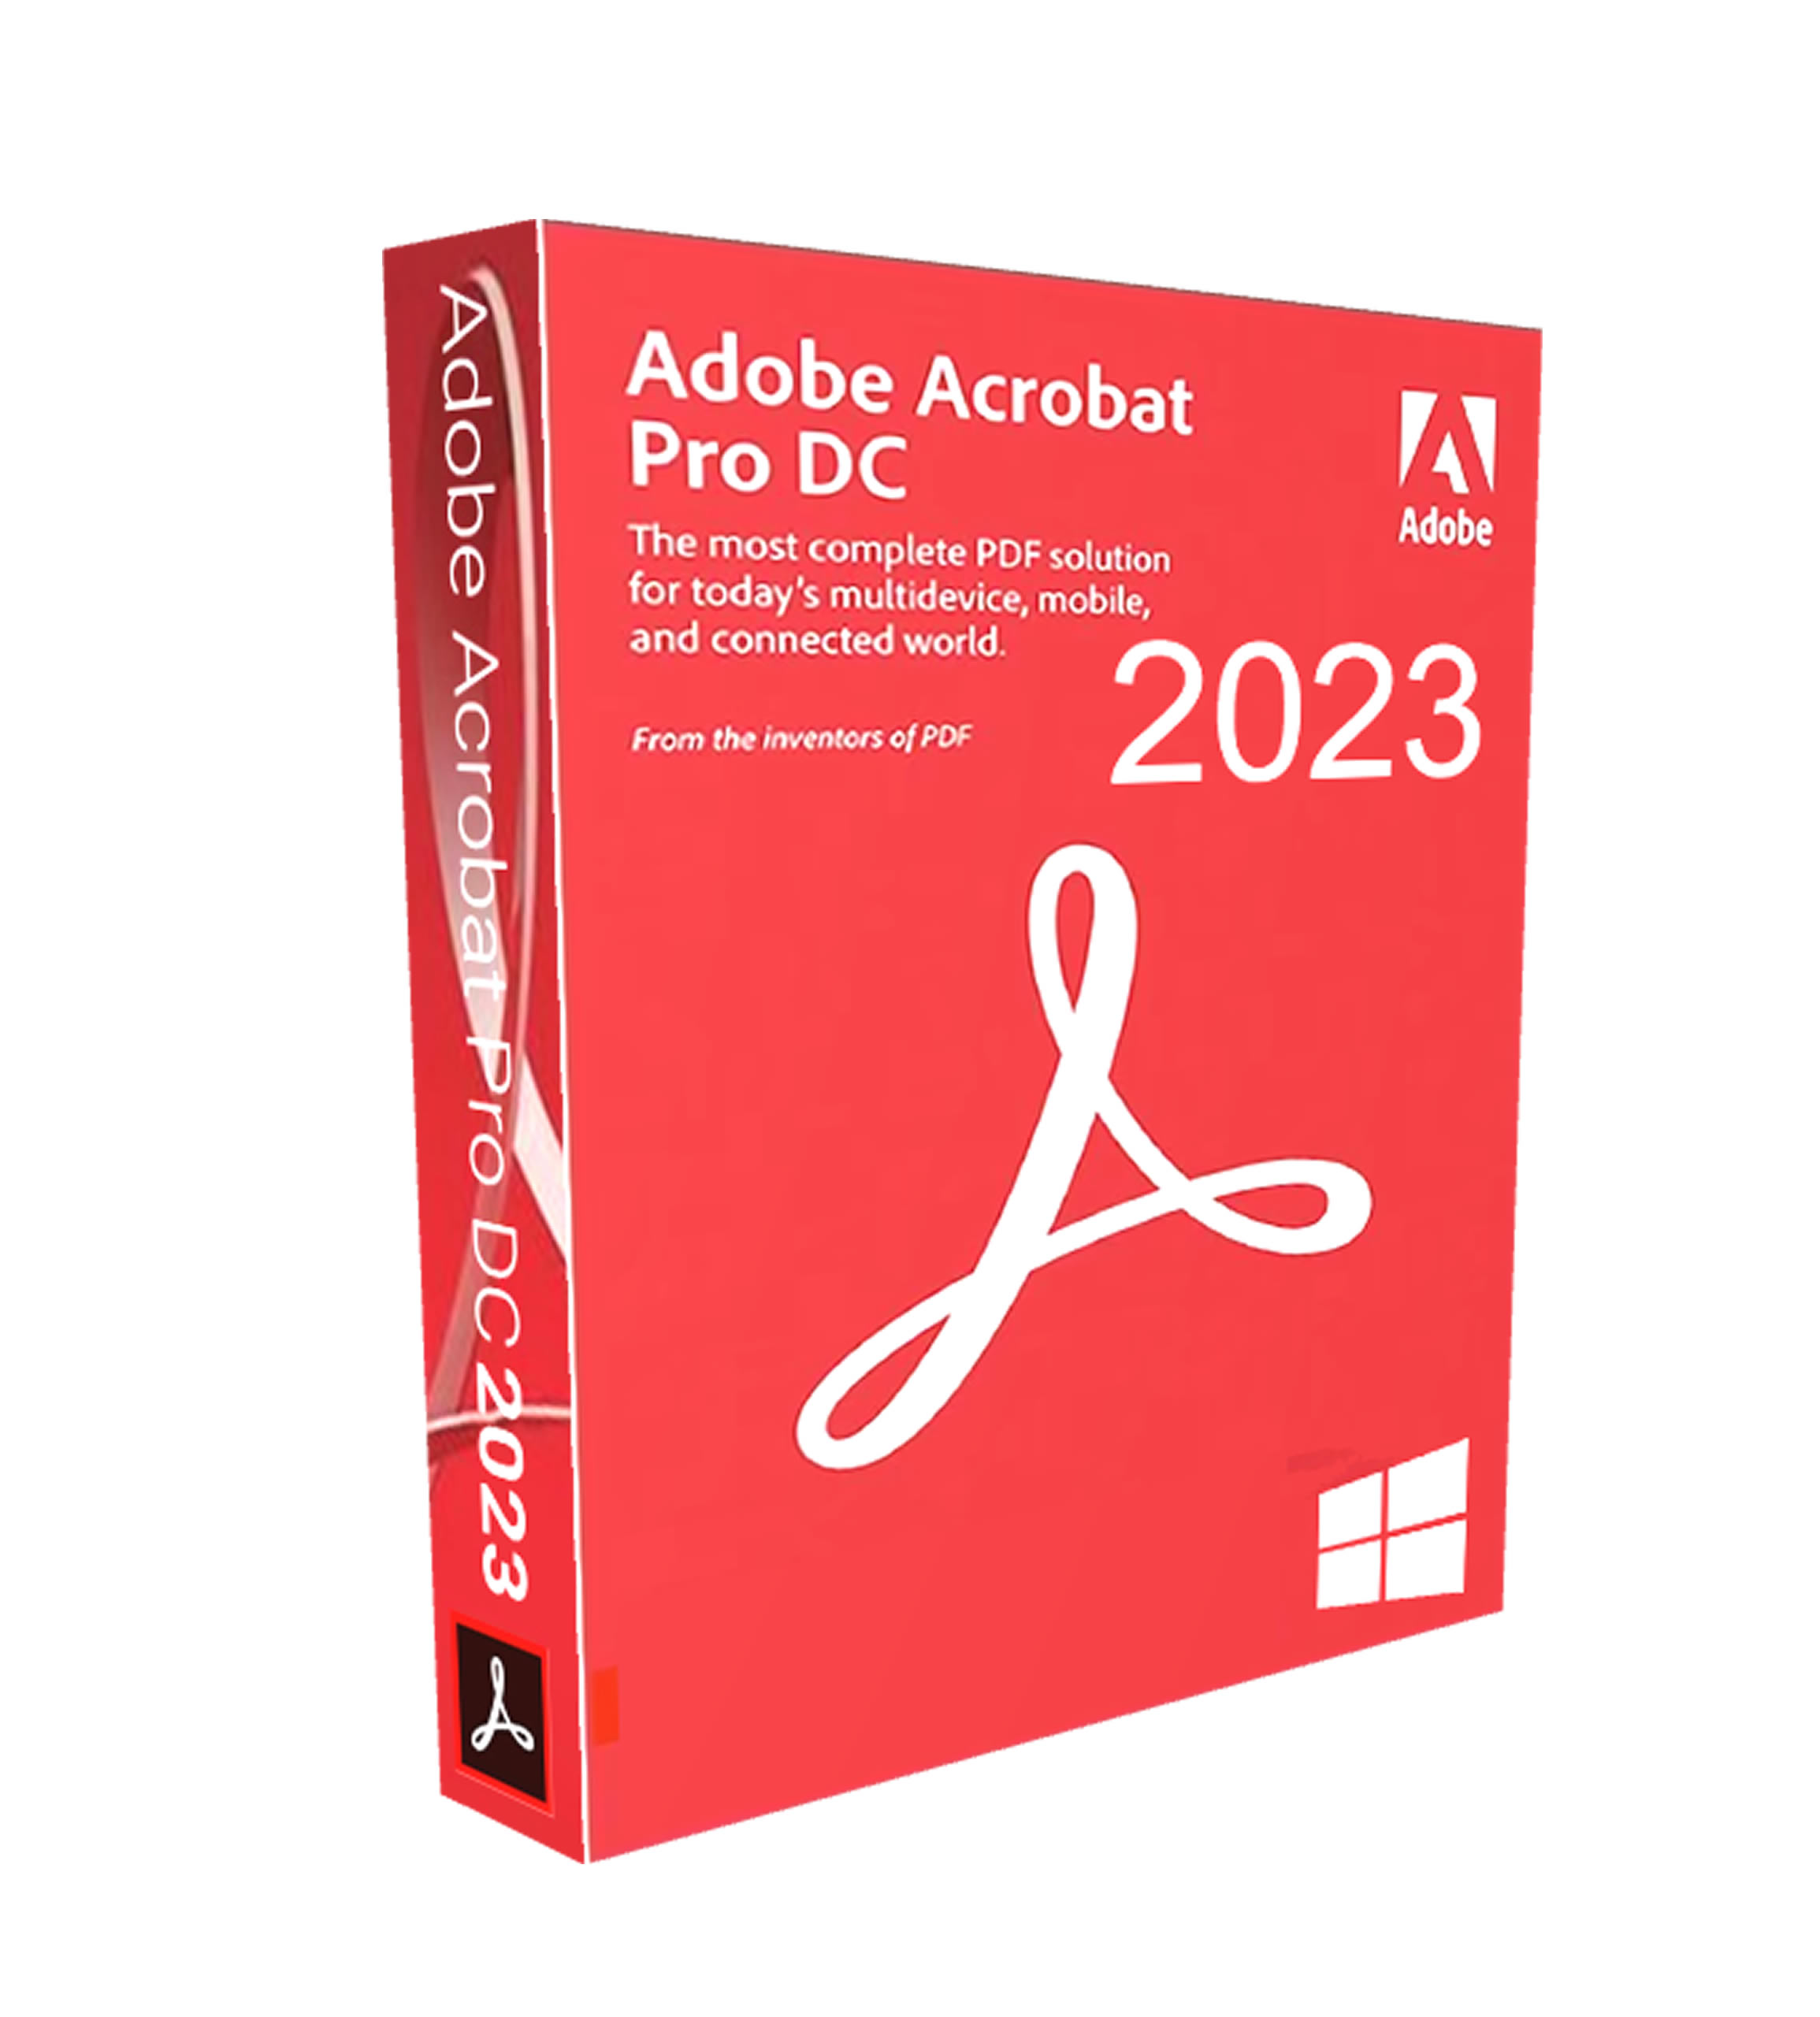 Adobe Acrobat Pro DC 4